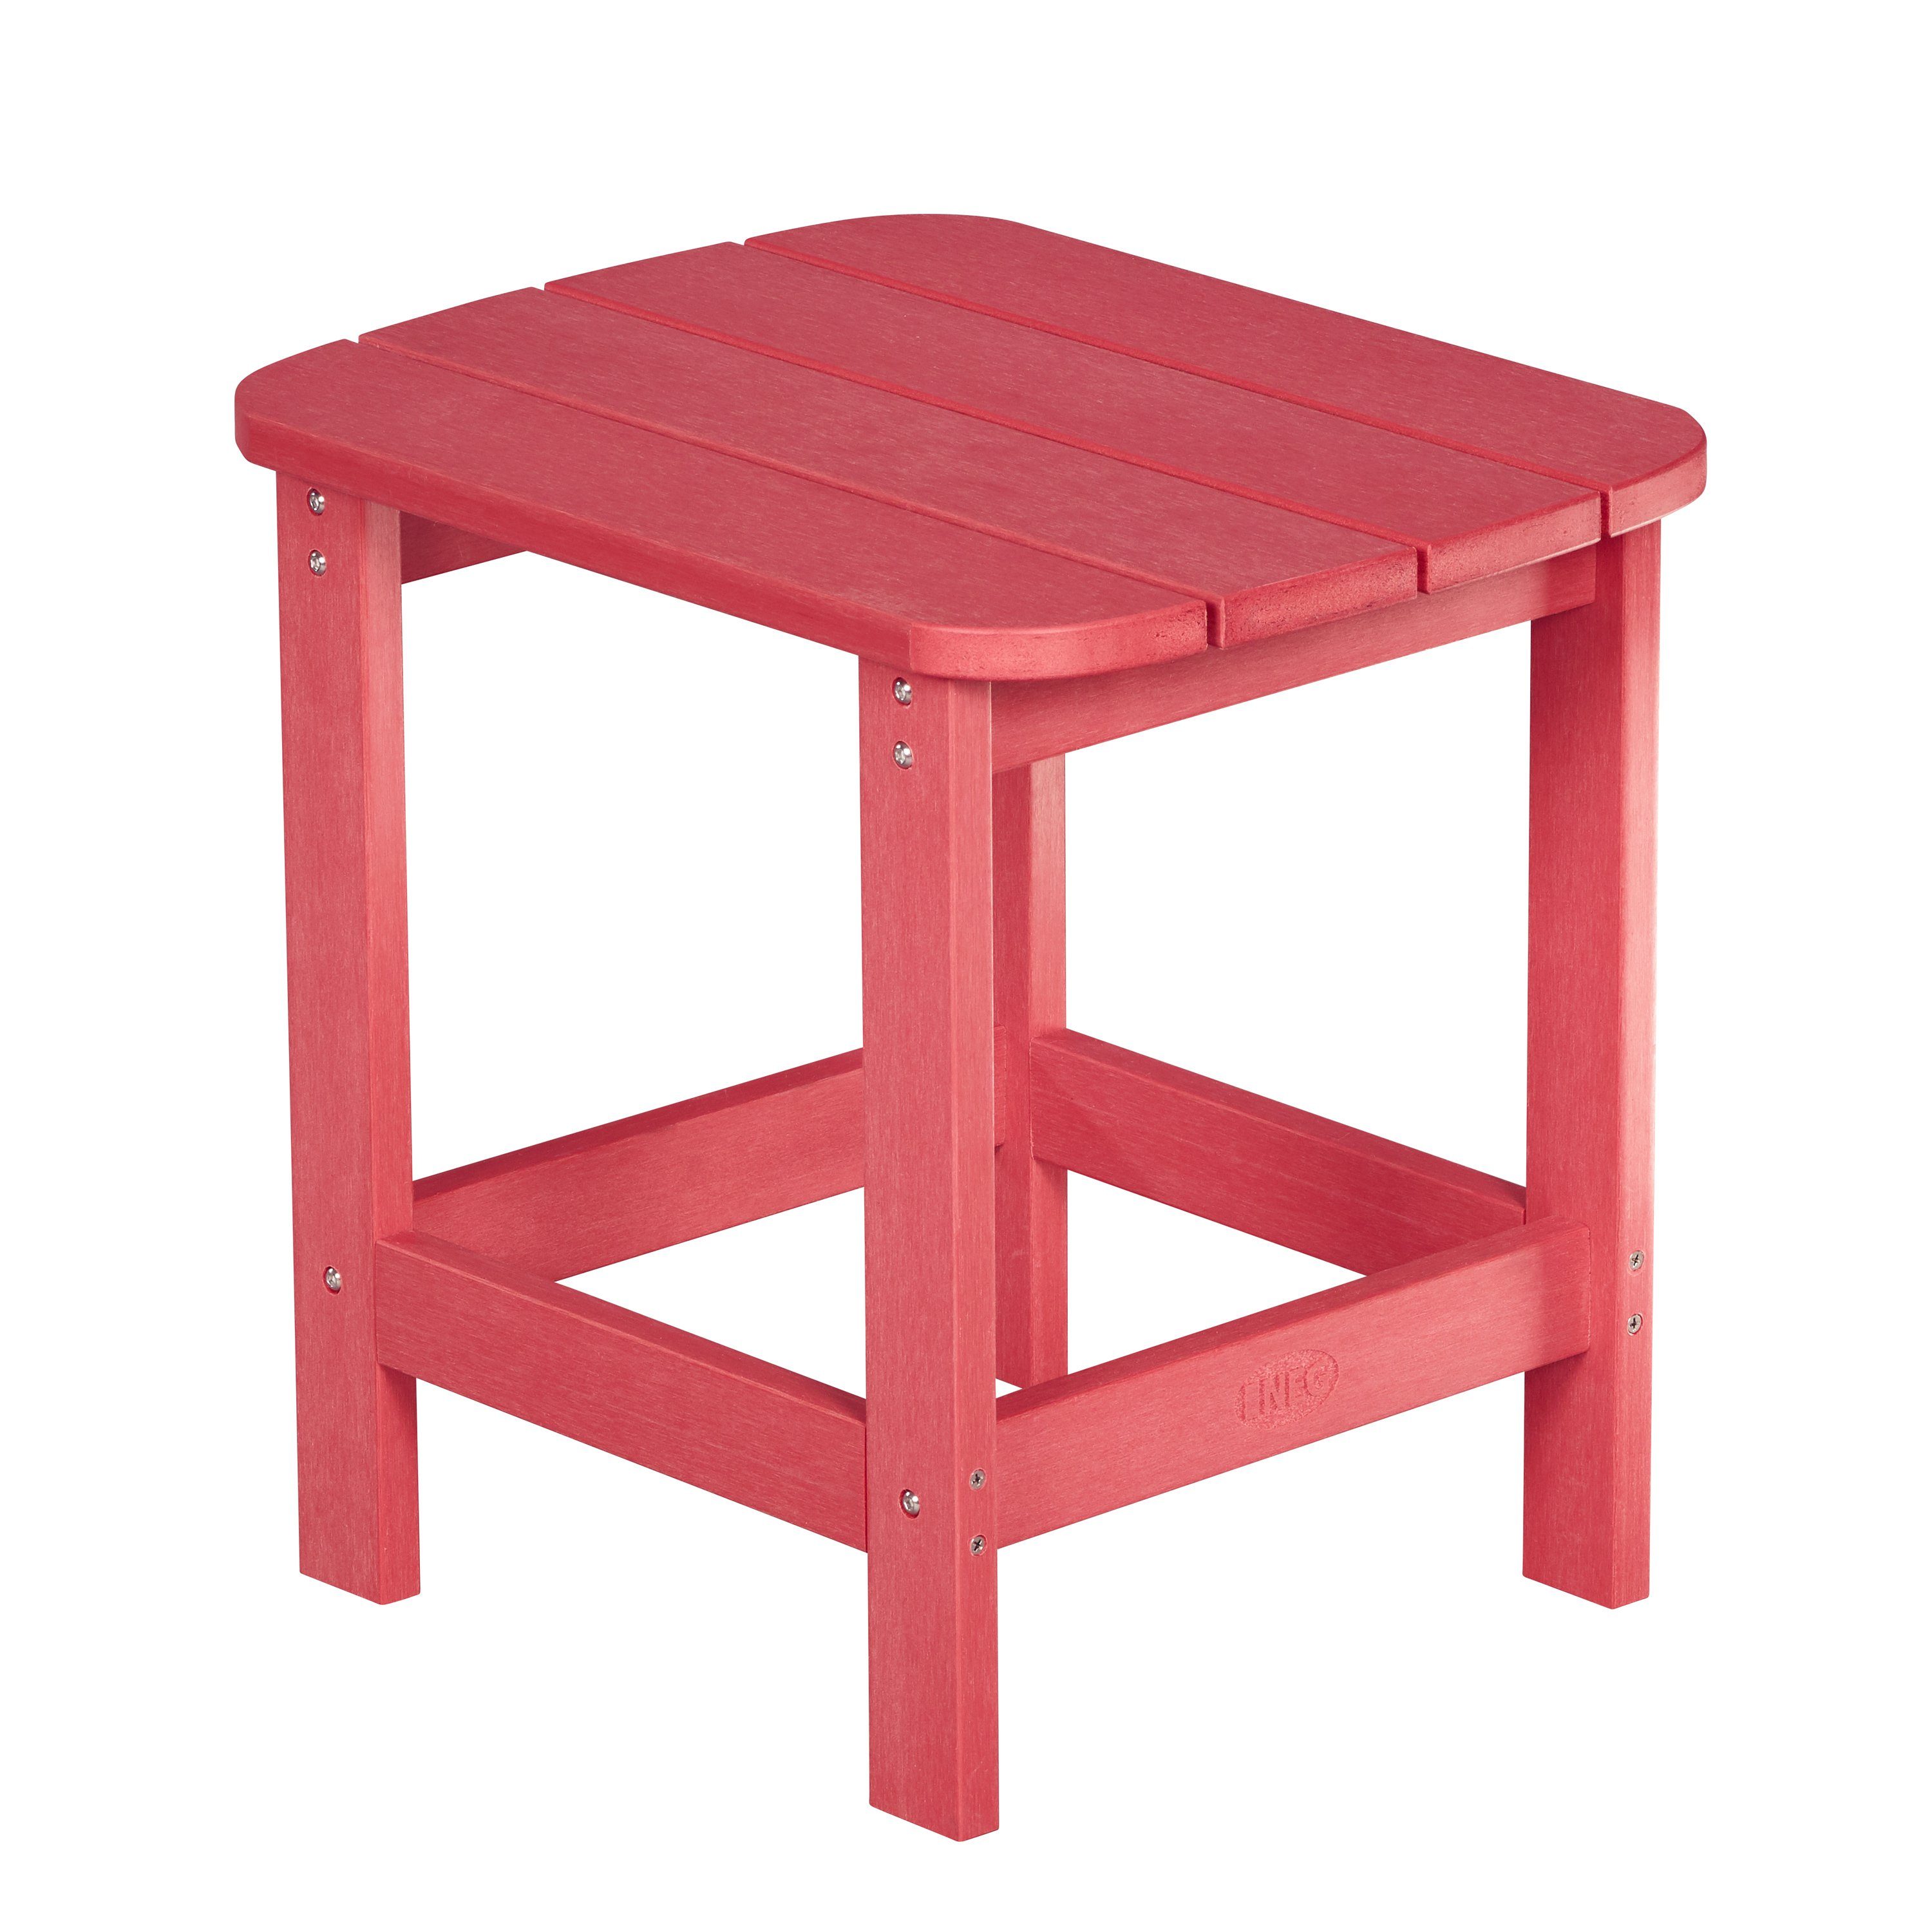 Gartenstuhl NEG MARCY rot Adirondack NEG Tisch/Beistelltisch